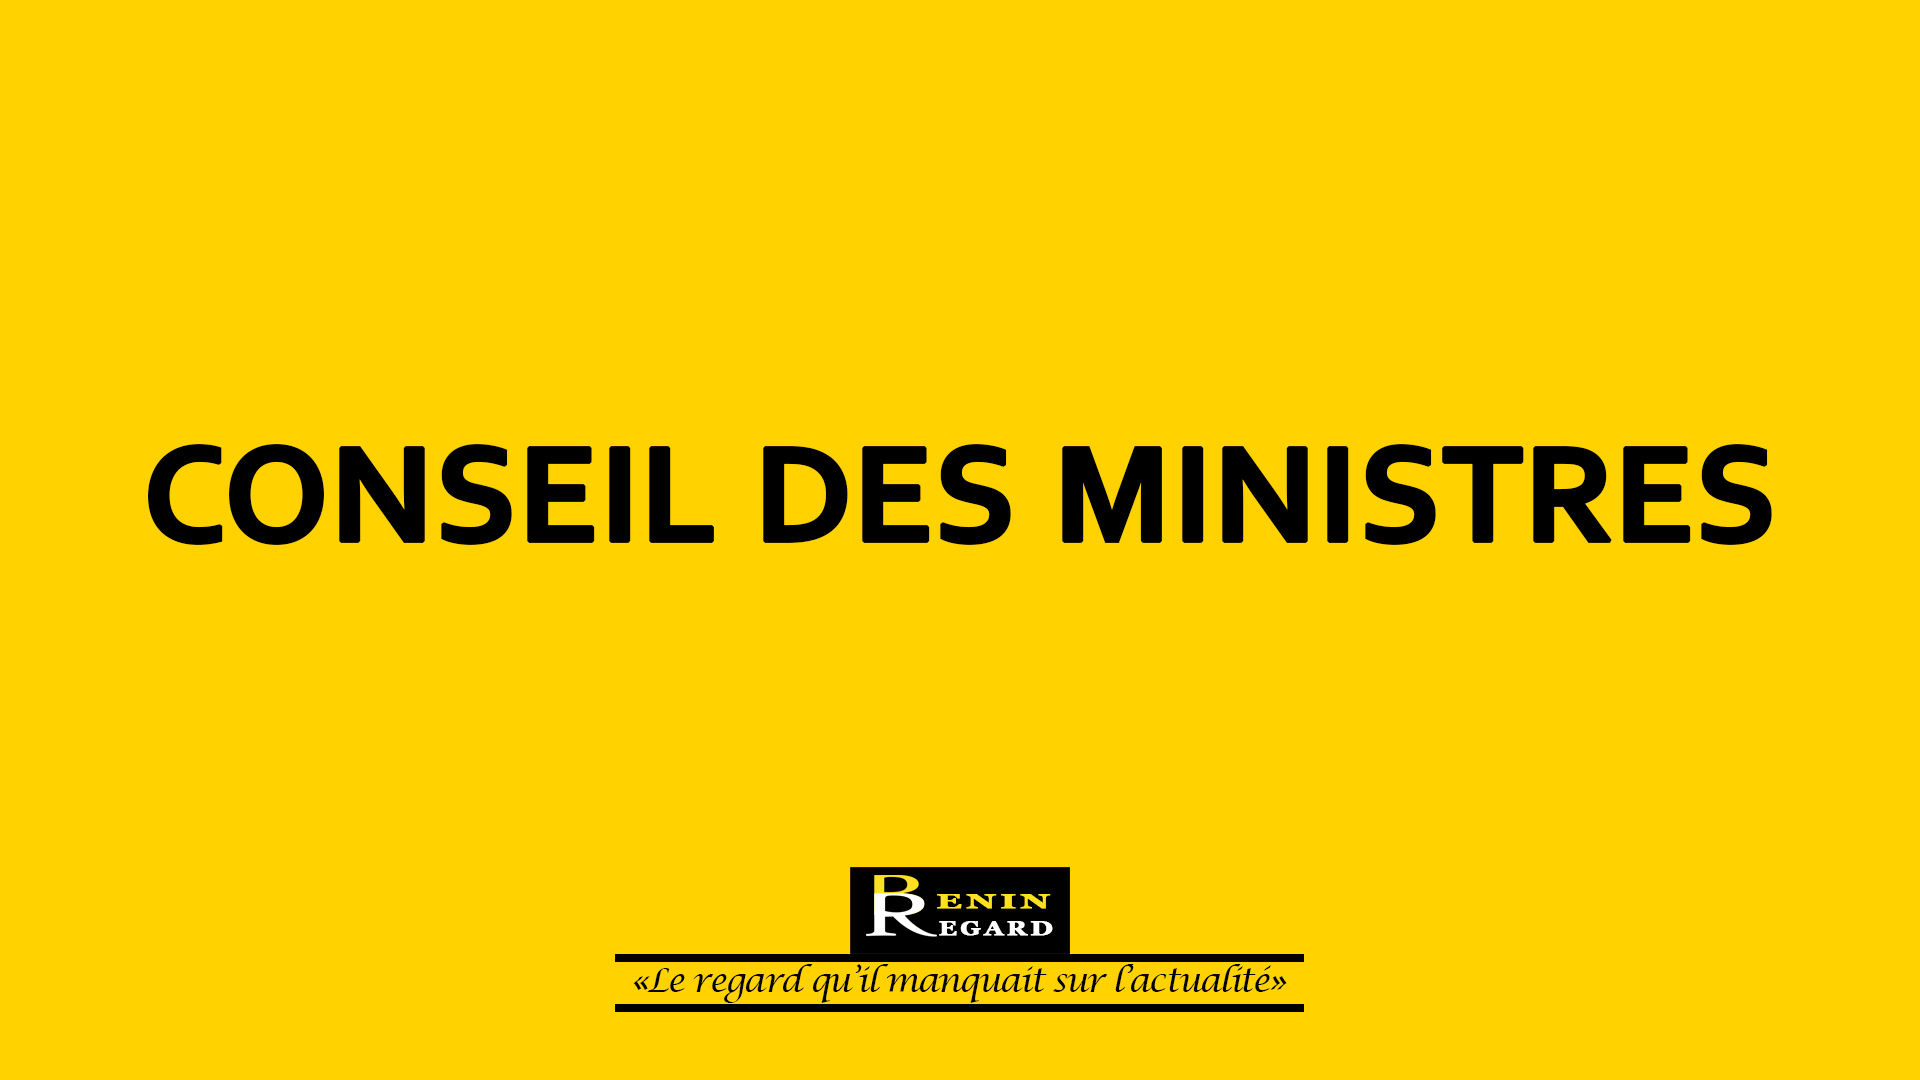 Bénin – Conseil des ministres : compte rendu de la session du 18 janvier 2023